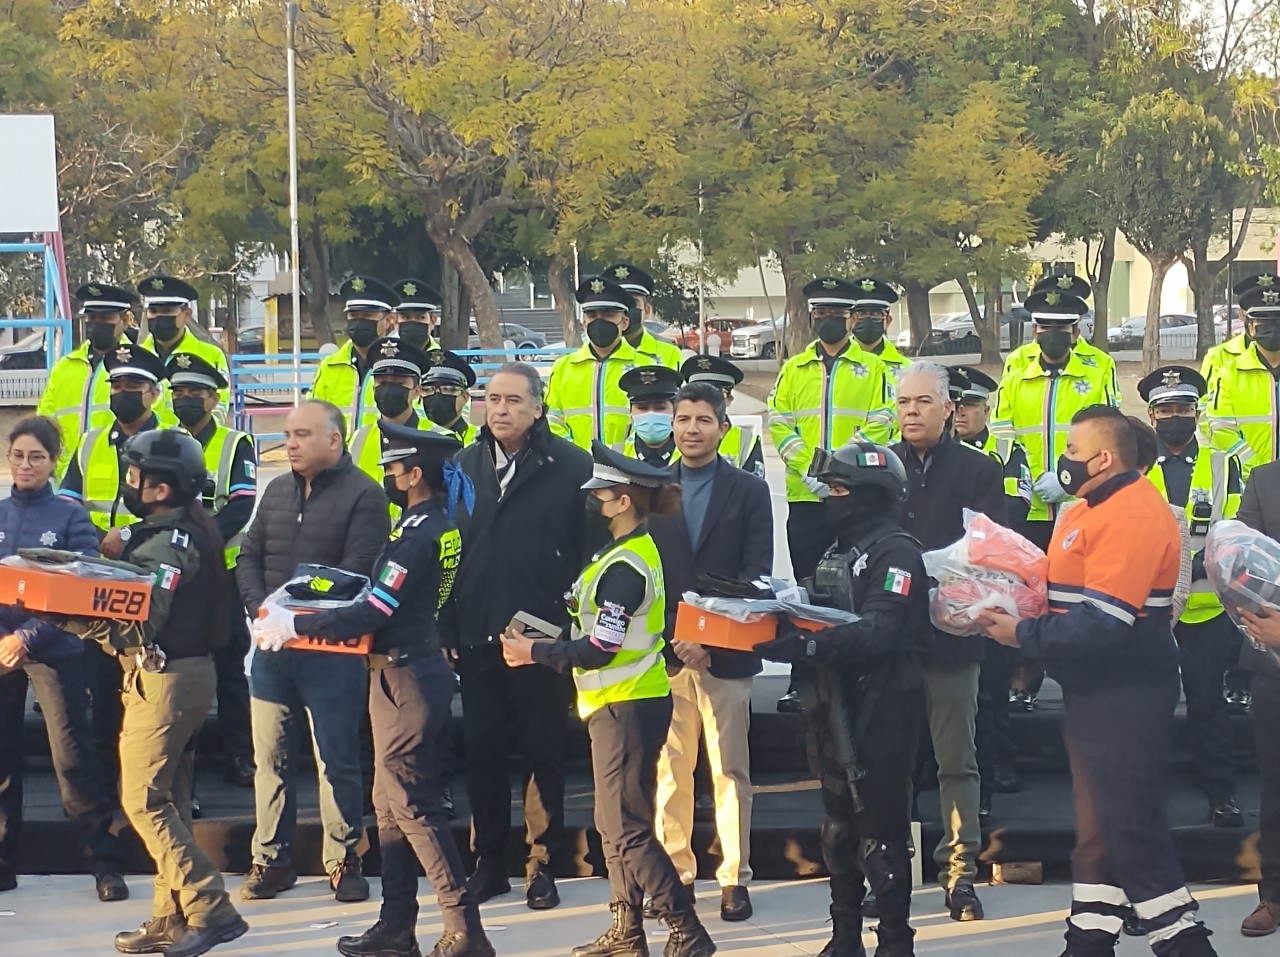 Video desde Puebla: Elementos de tránsito portarán cámaras corporales y Eduardo Rivera entrega uniformes a elementos de la SSC